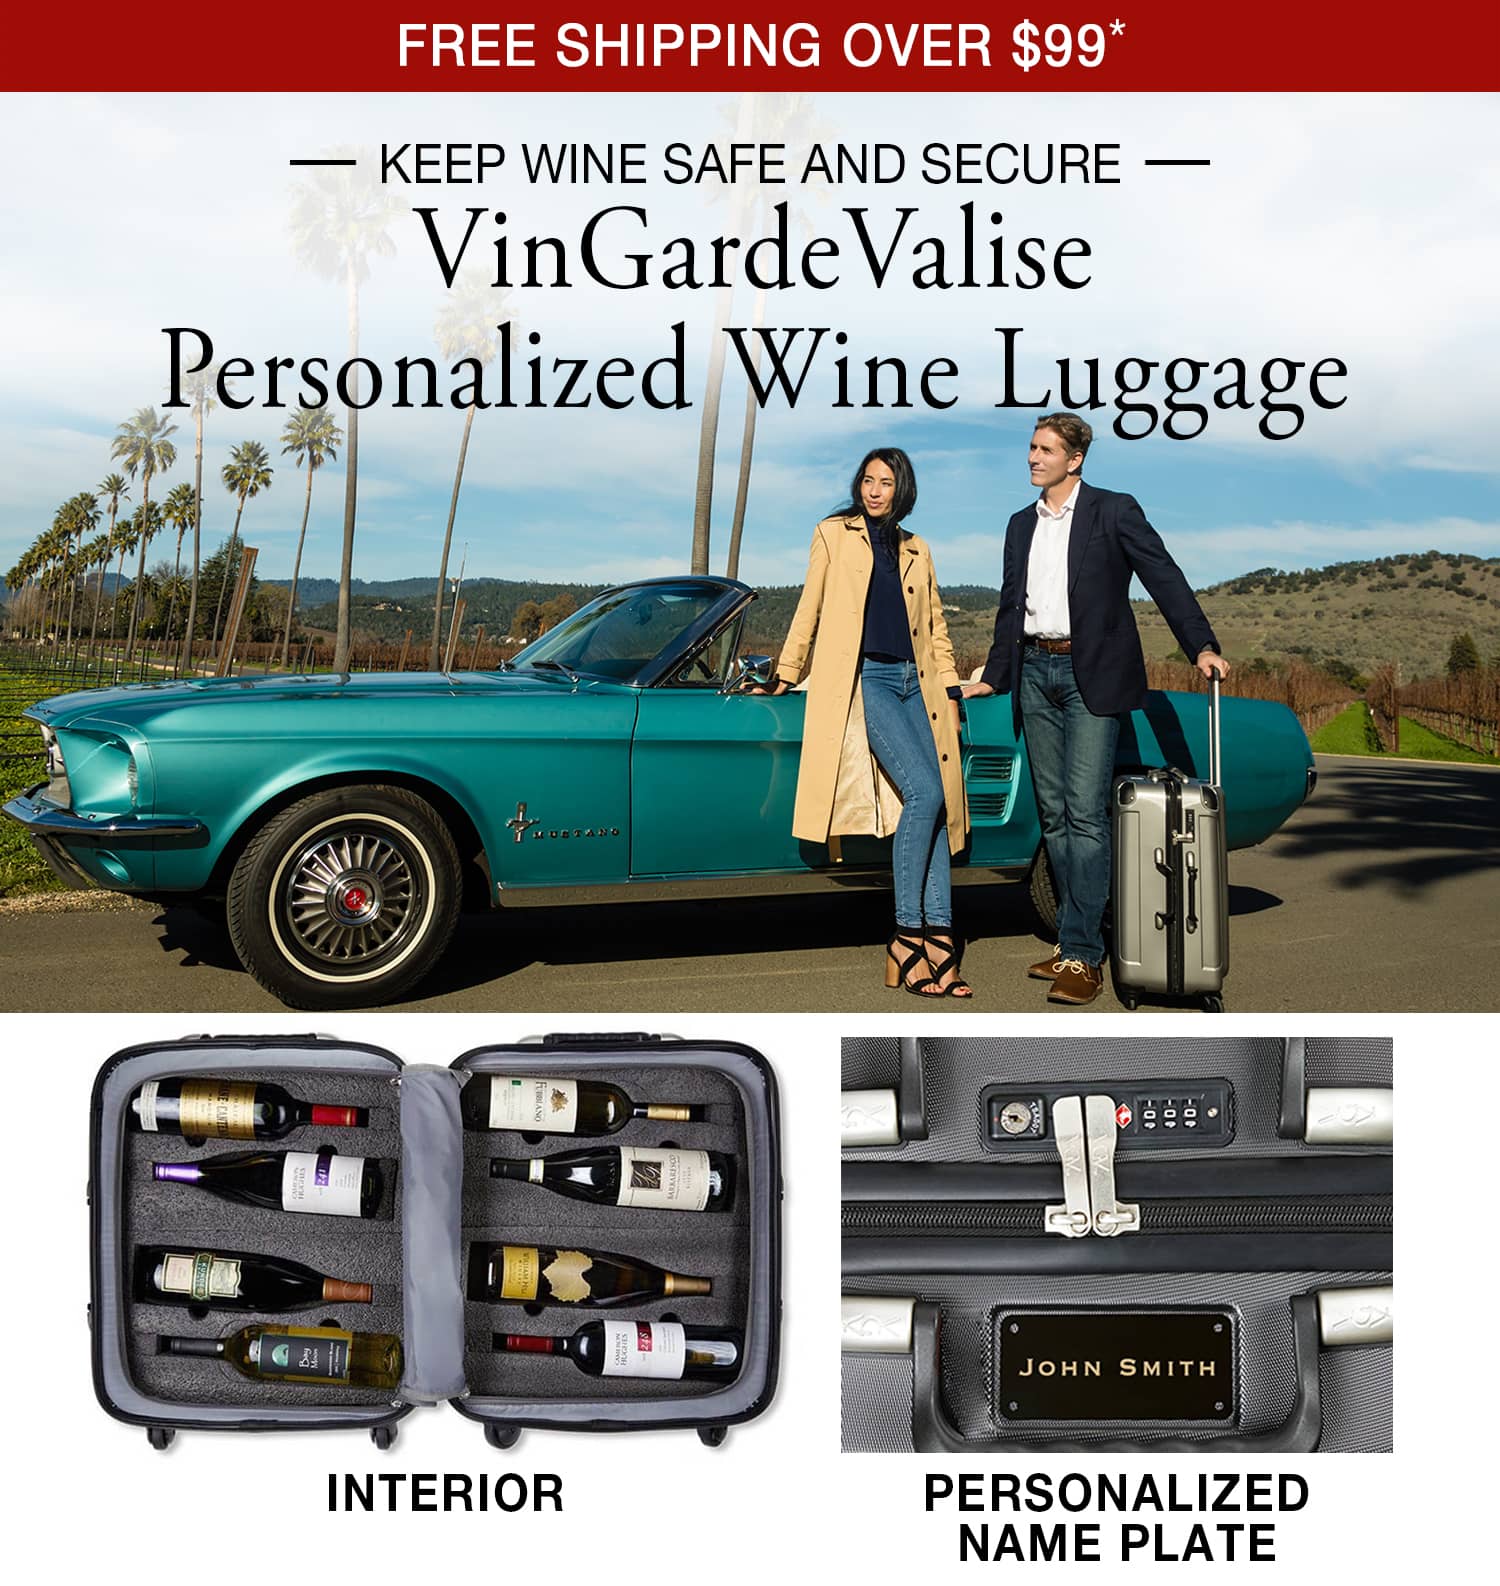 VinGardeValise Personalized Wine Luggage - Free Shipping Over $99*